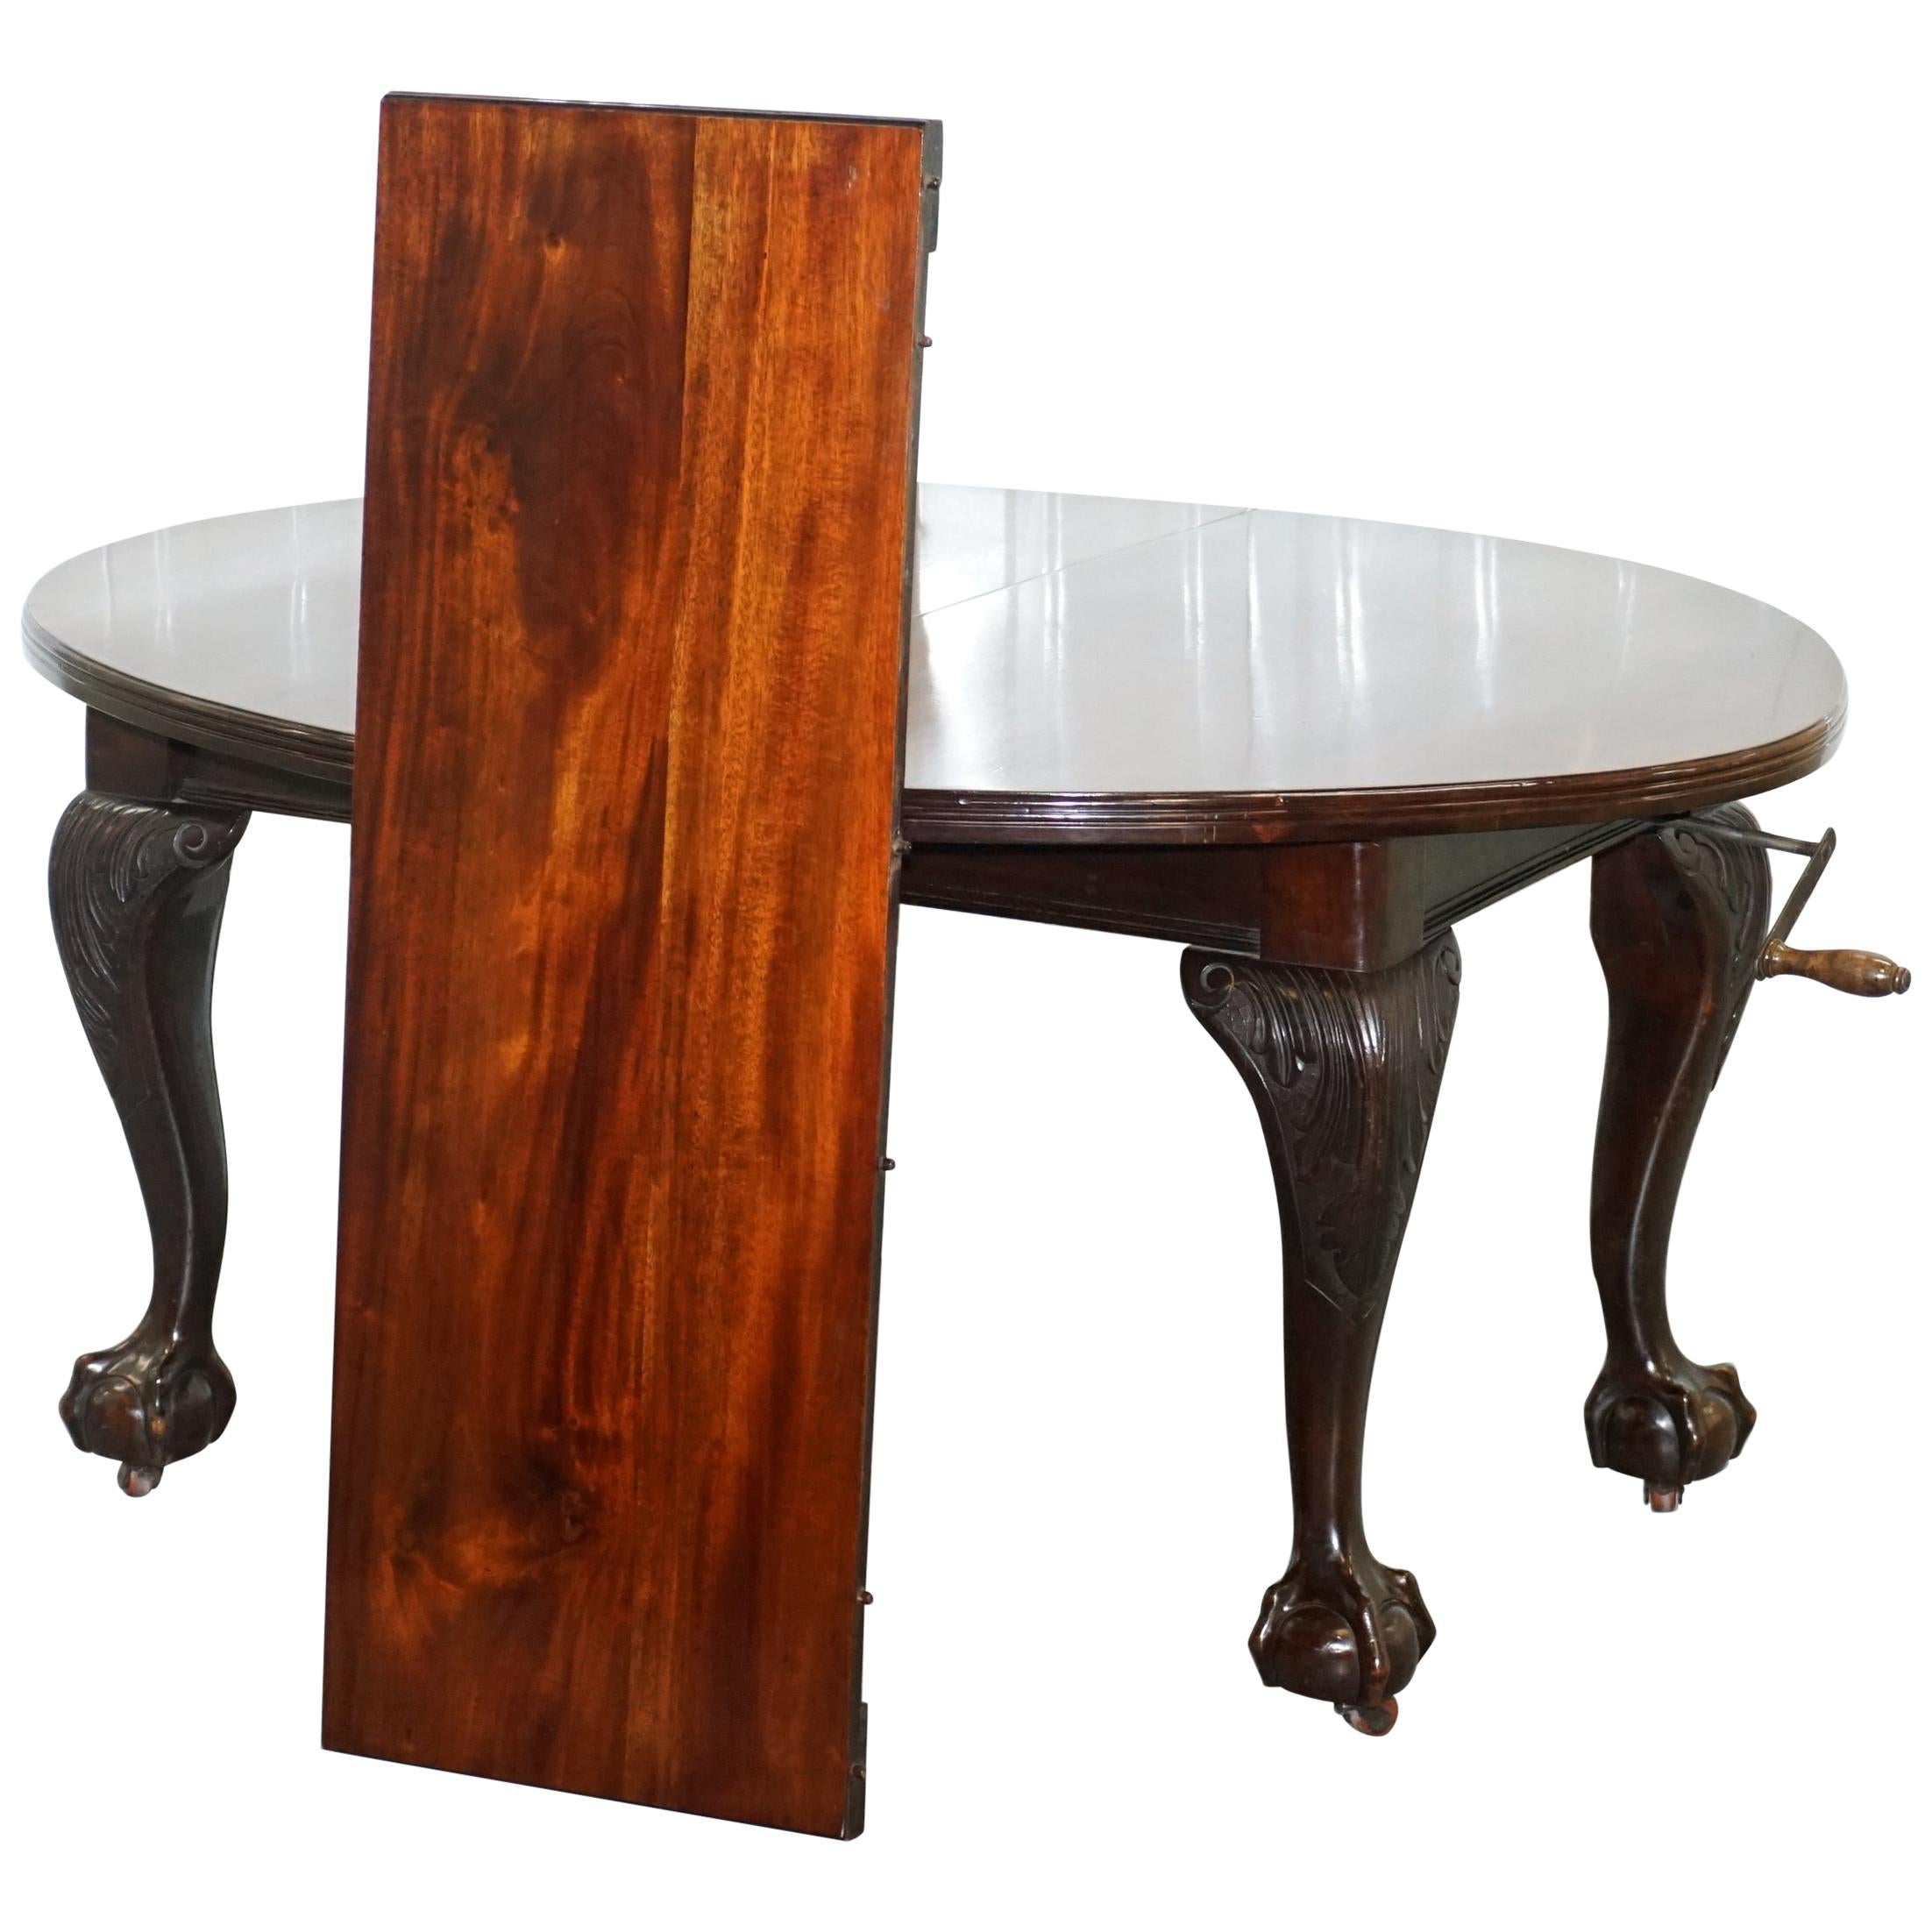 Stupendo tavolo da pranzo allungabile in legno massiccio di epoca vittoriana di James Phillips & Sons